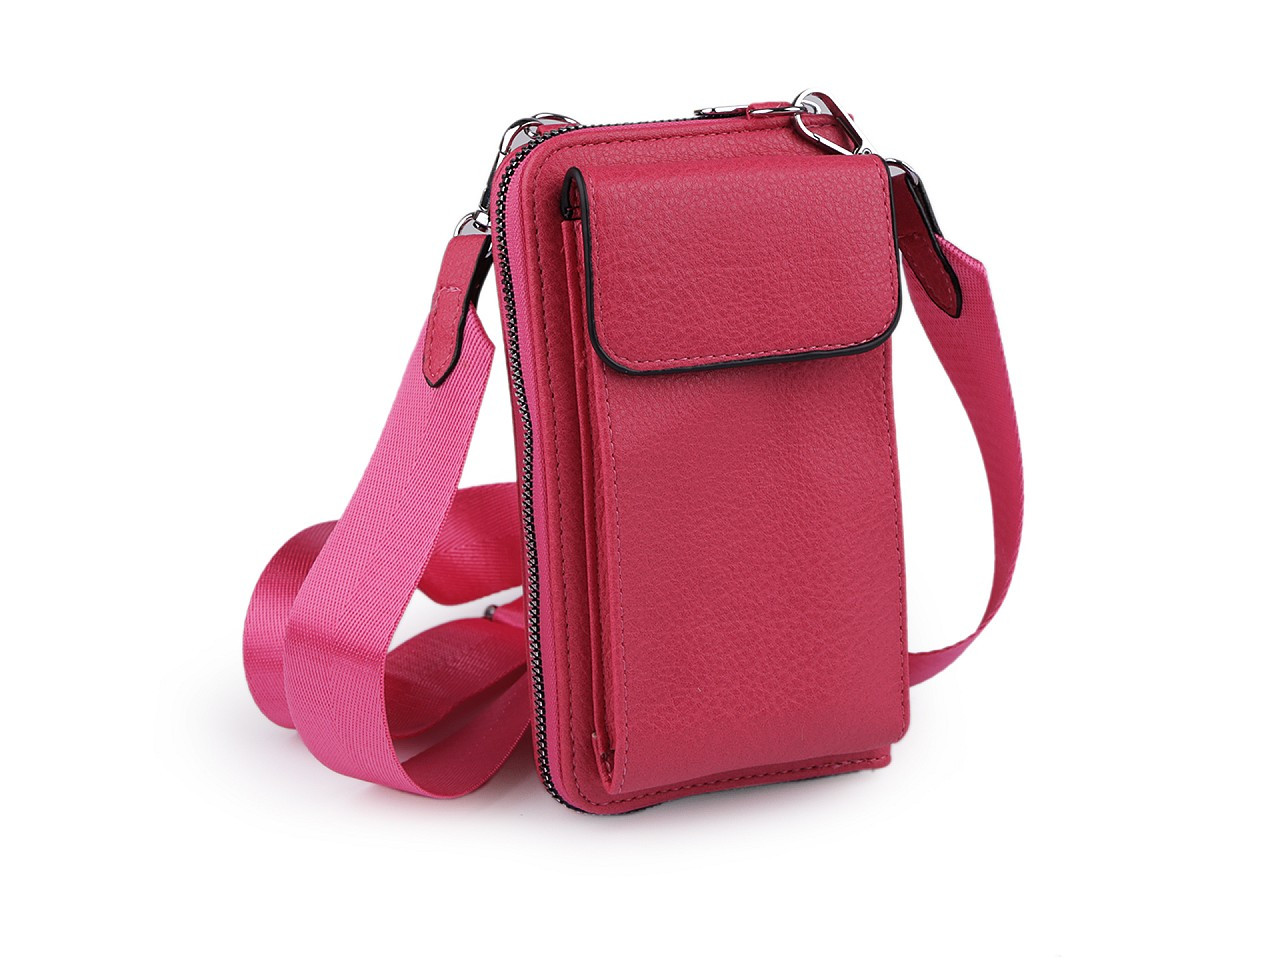 Peněženka s kapsou na mobil přes rameno crossbody s klíčenkou 11x19 cm, barva 3 pink